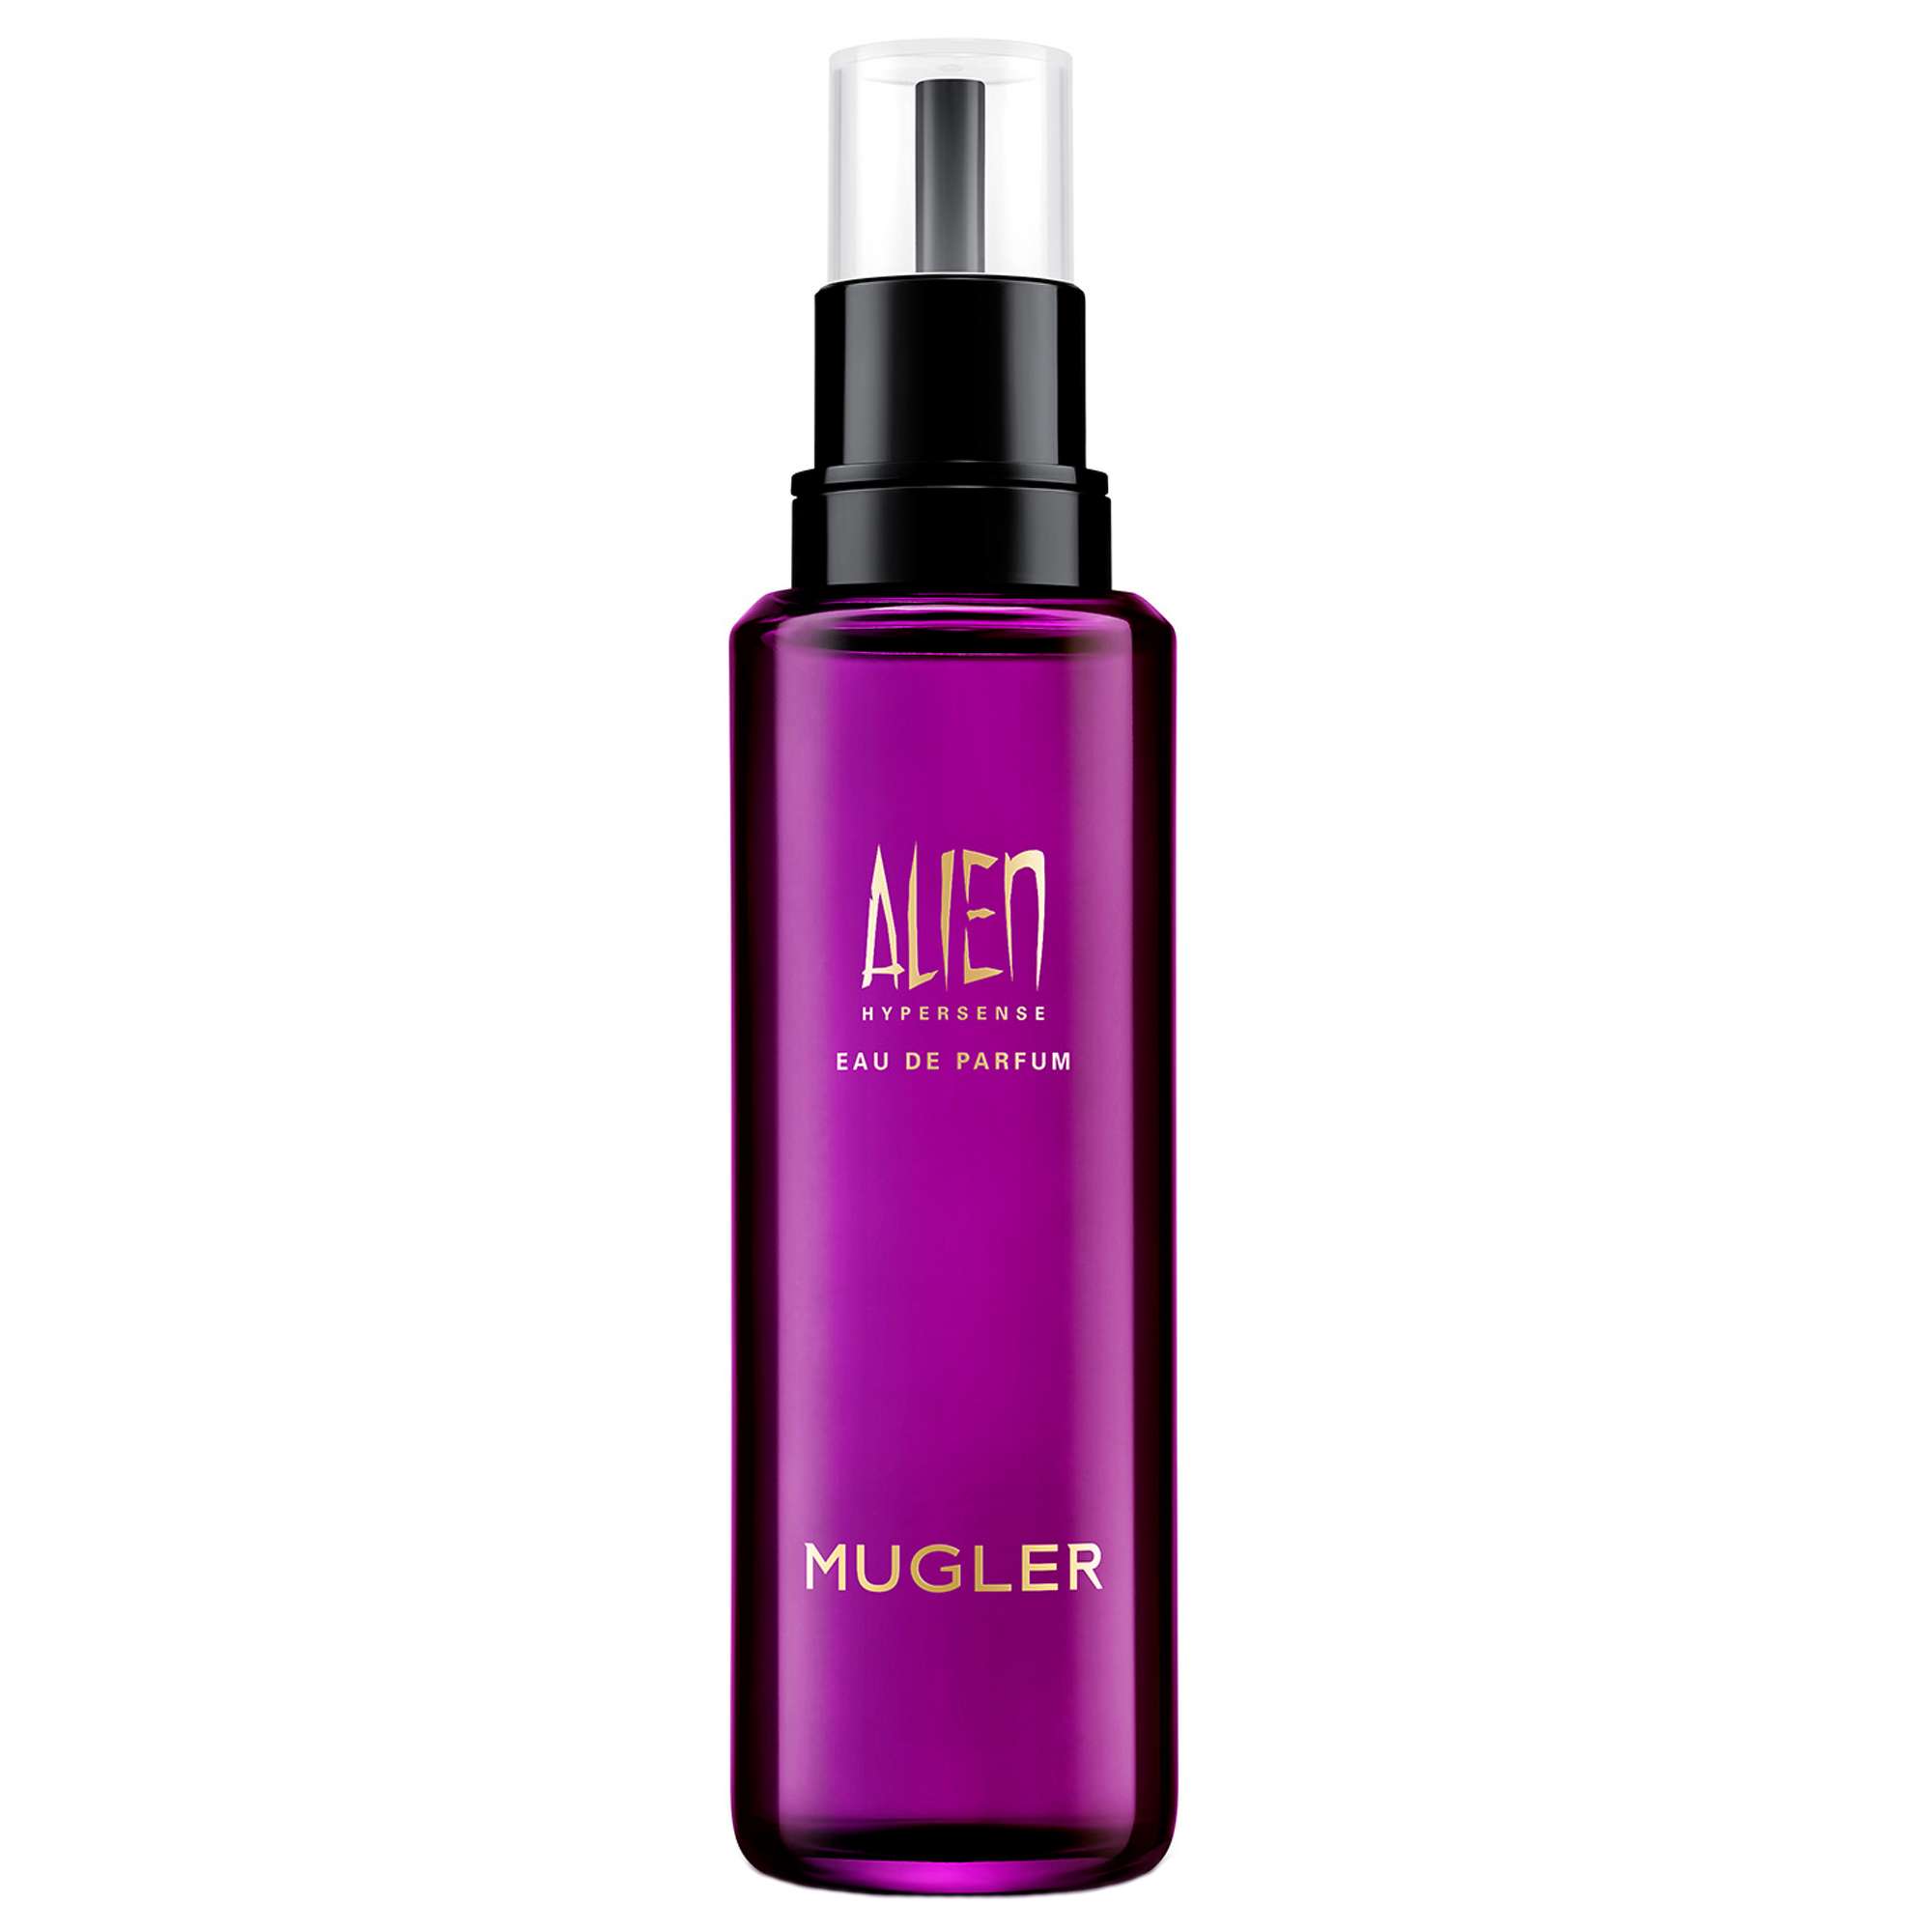 Photos - Women's Fragrance Thierry Mugler MUGLER Alien Hypersense Eau de Parfum Refill 100ml 